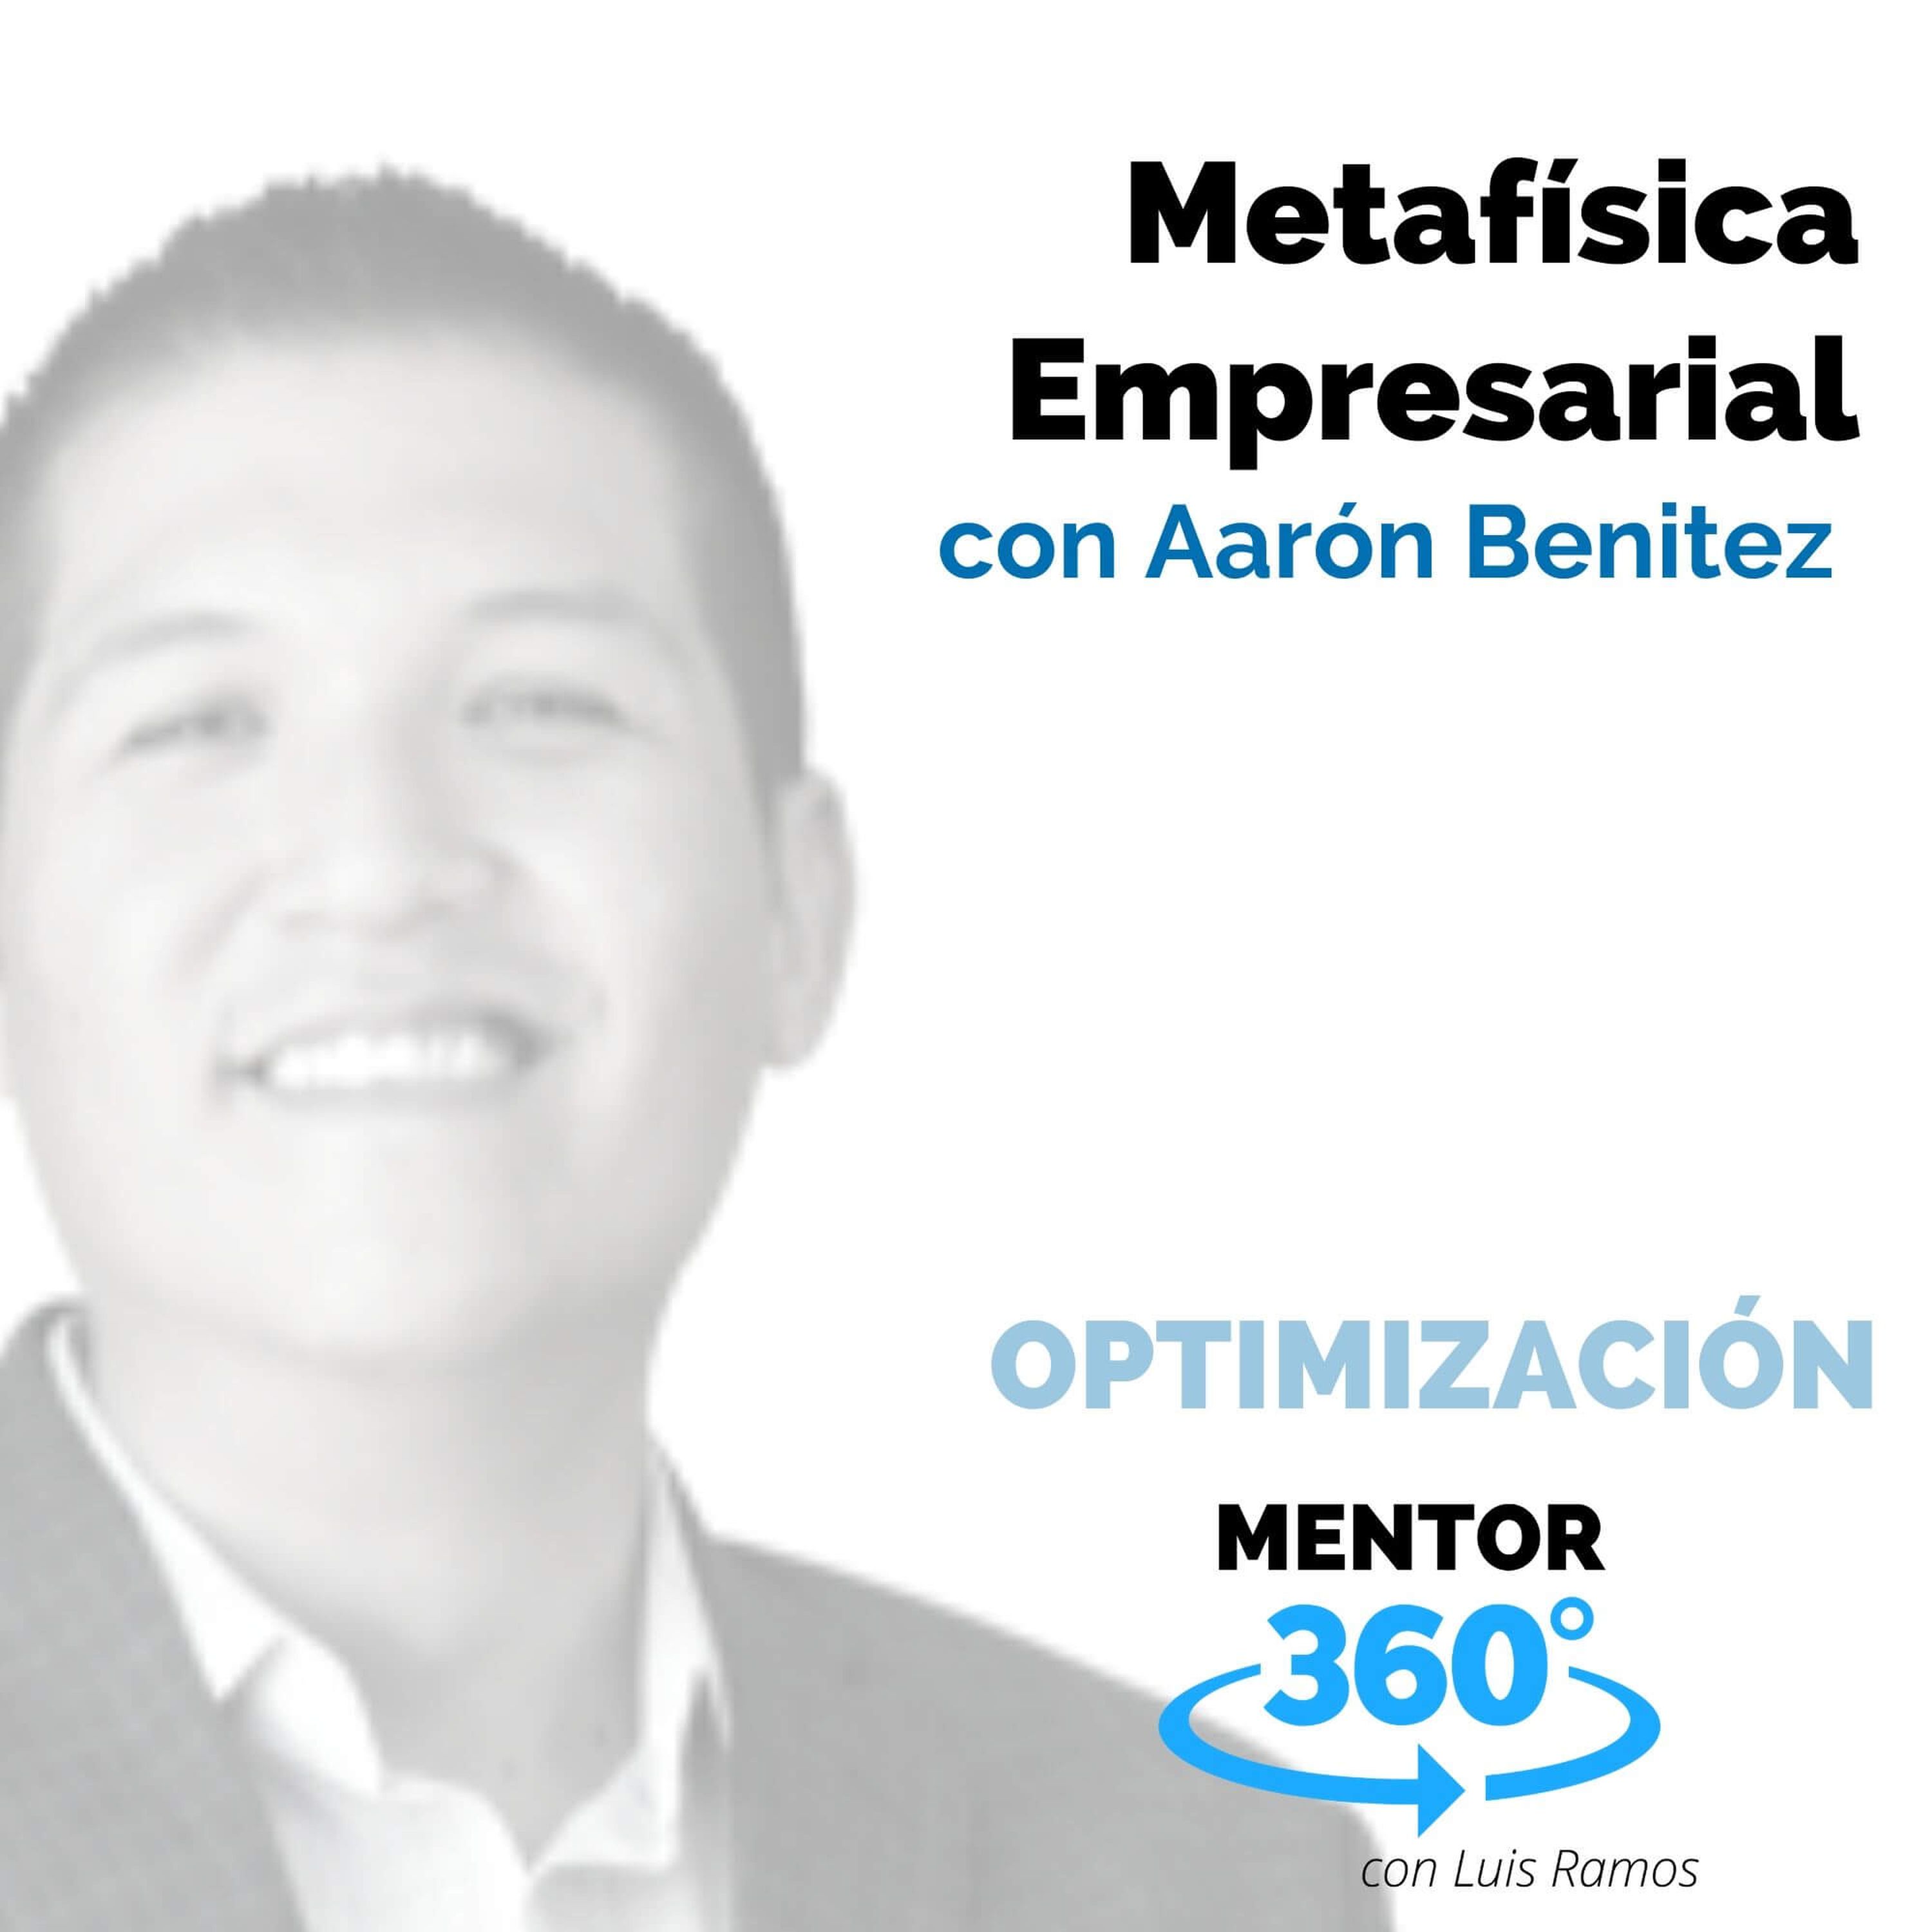 Metafísica Empresarial, con Aarón Benítez - OPTIMIZACIÓN